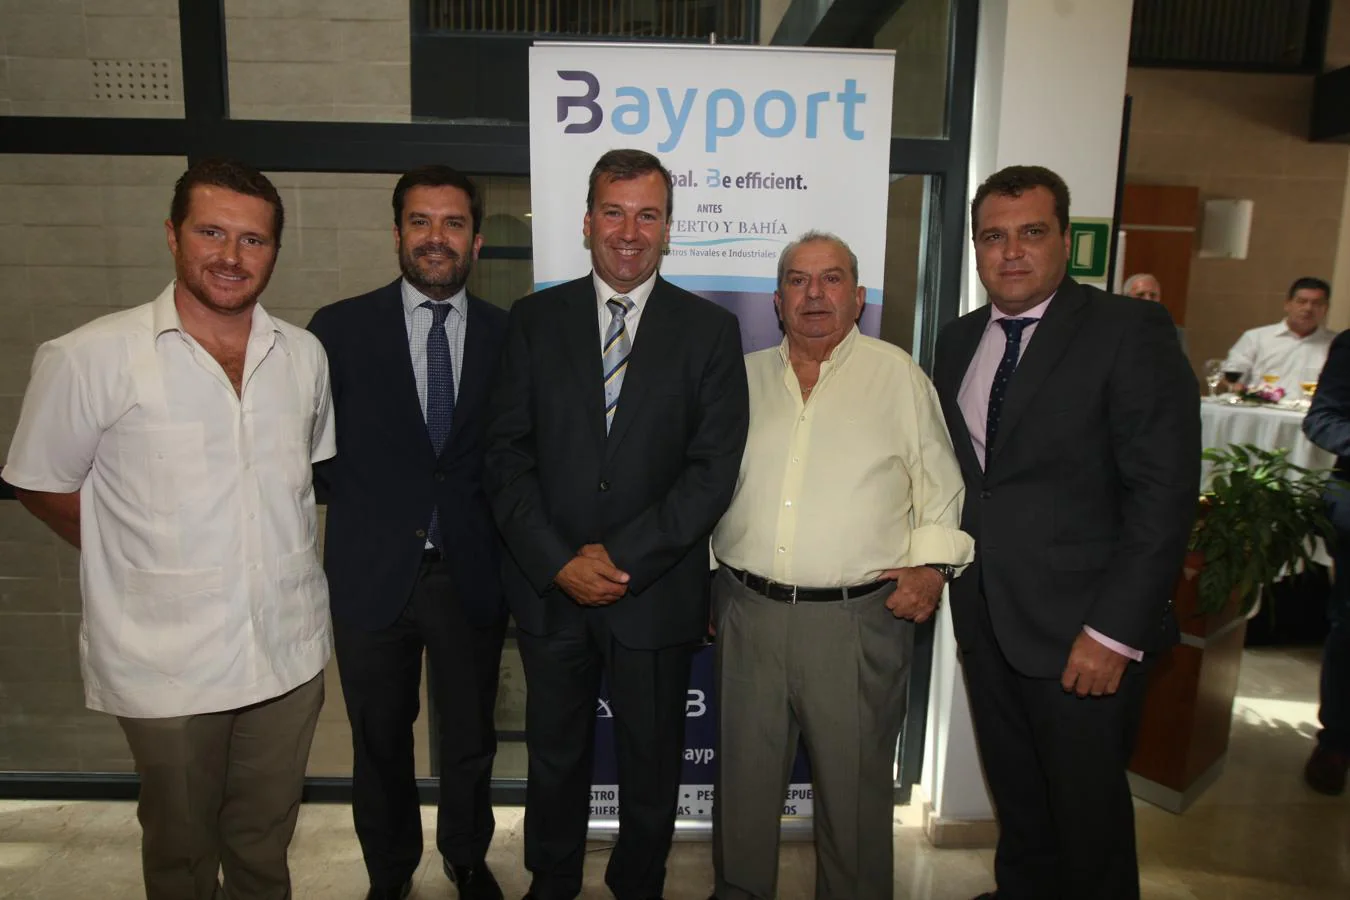 Presentación de Bayport en la Confederación de Empresarios de Cádiz